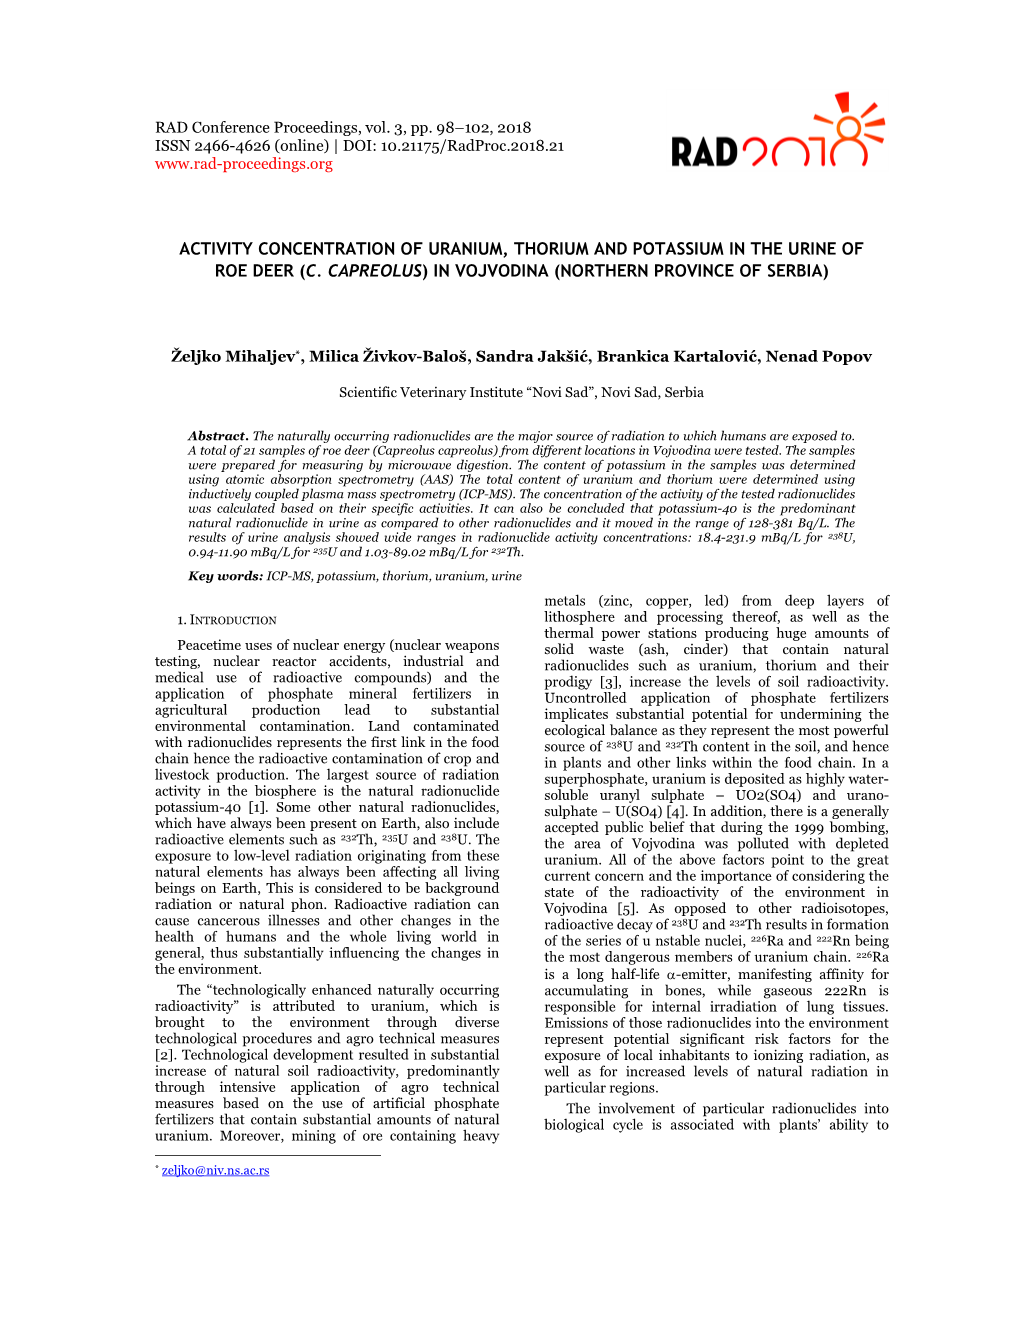 Activity Concentration of Uranium, Thorium and Potassium in the Urine of Roe Deer (C